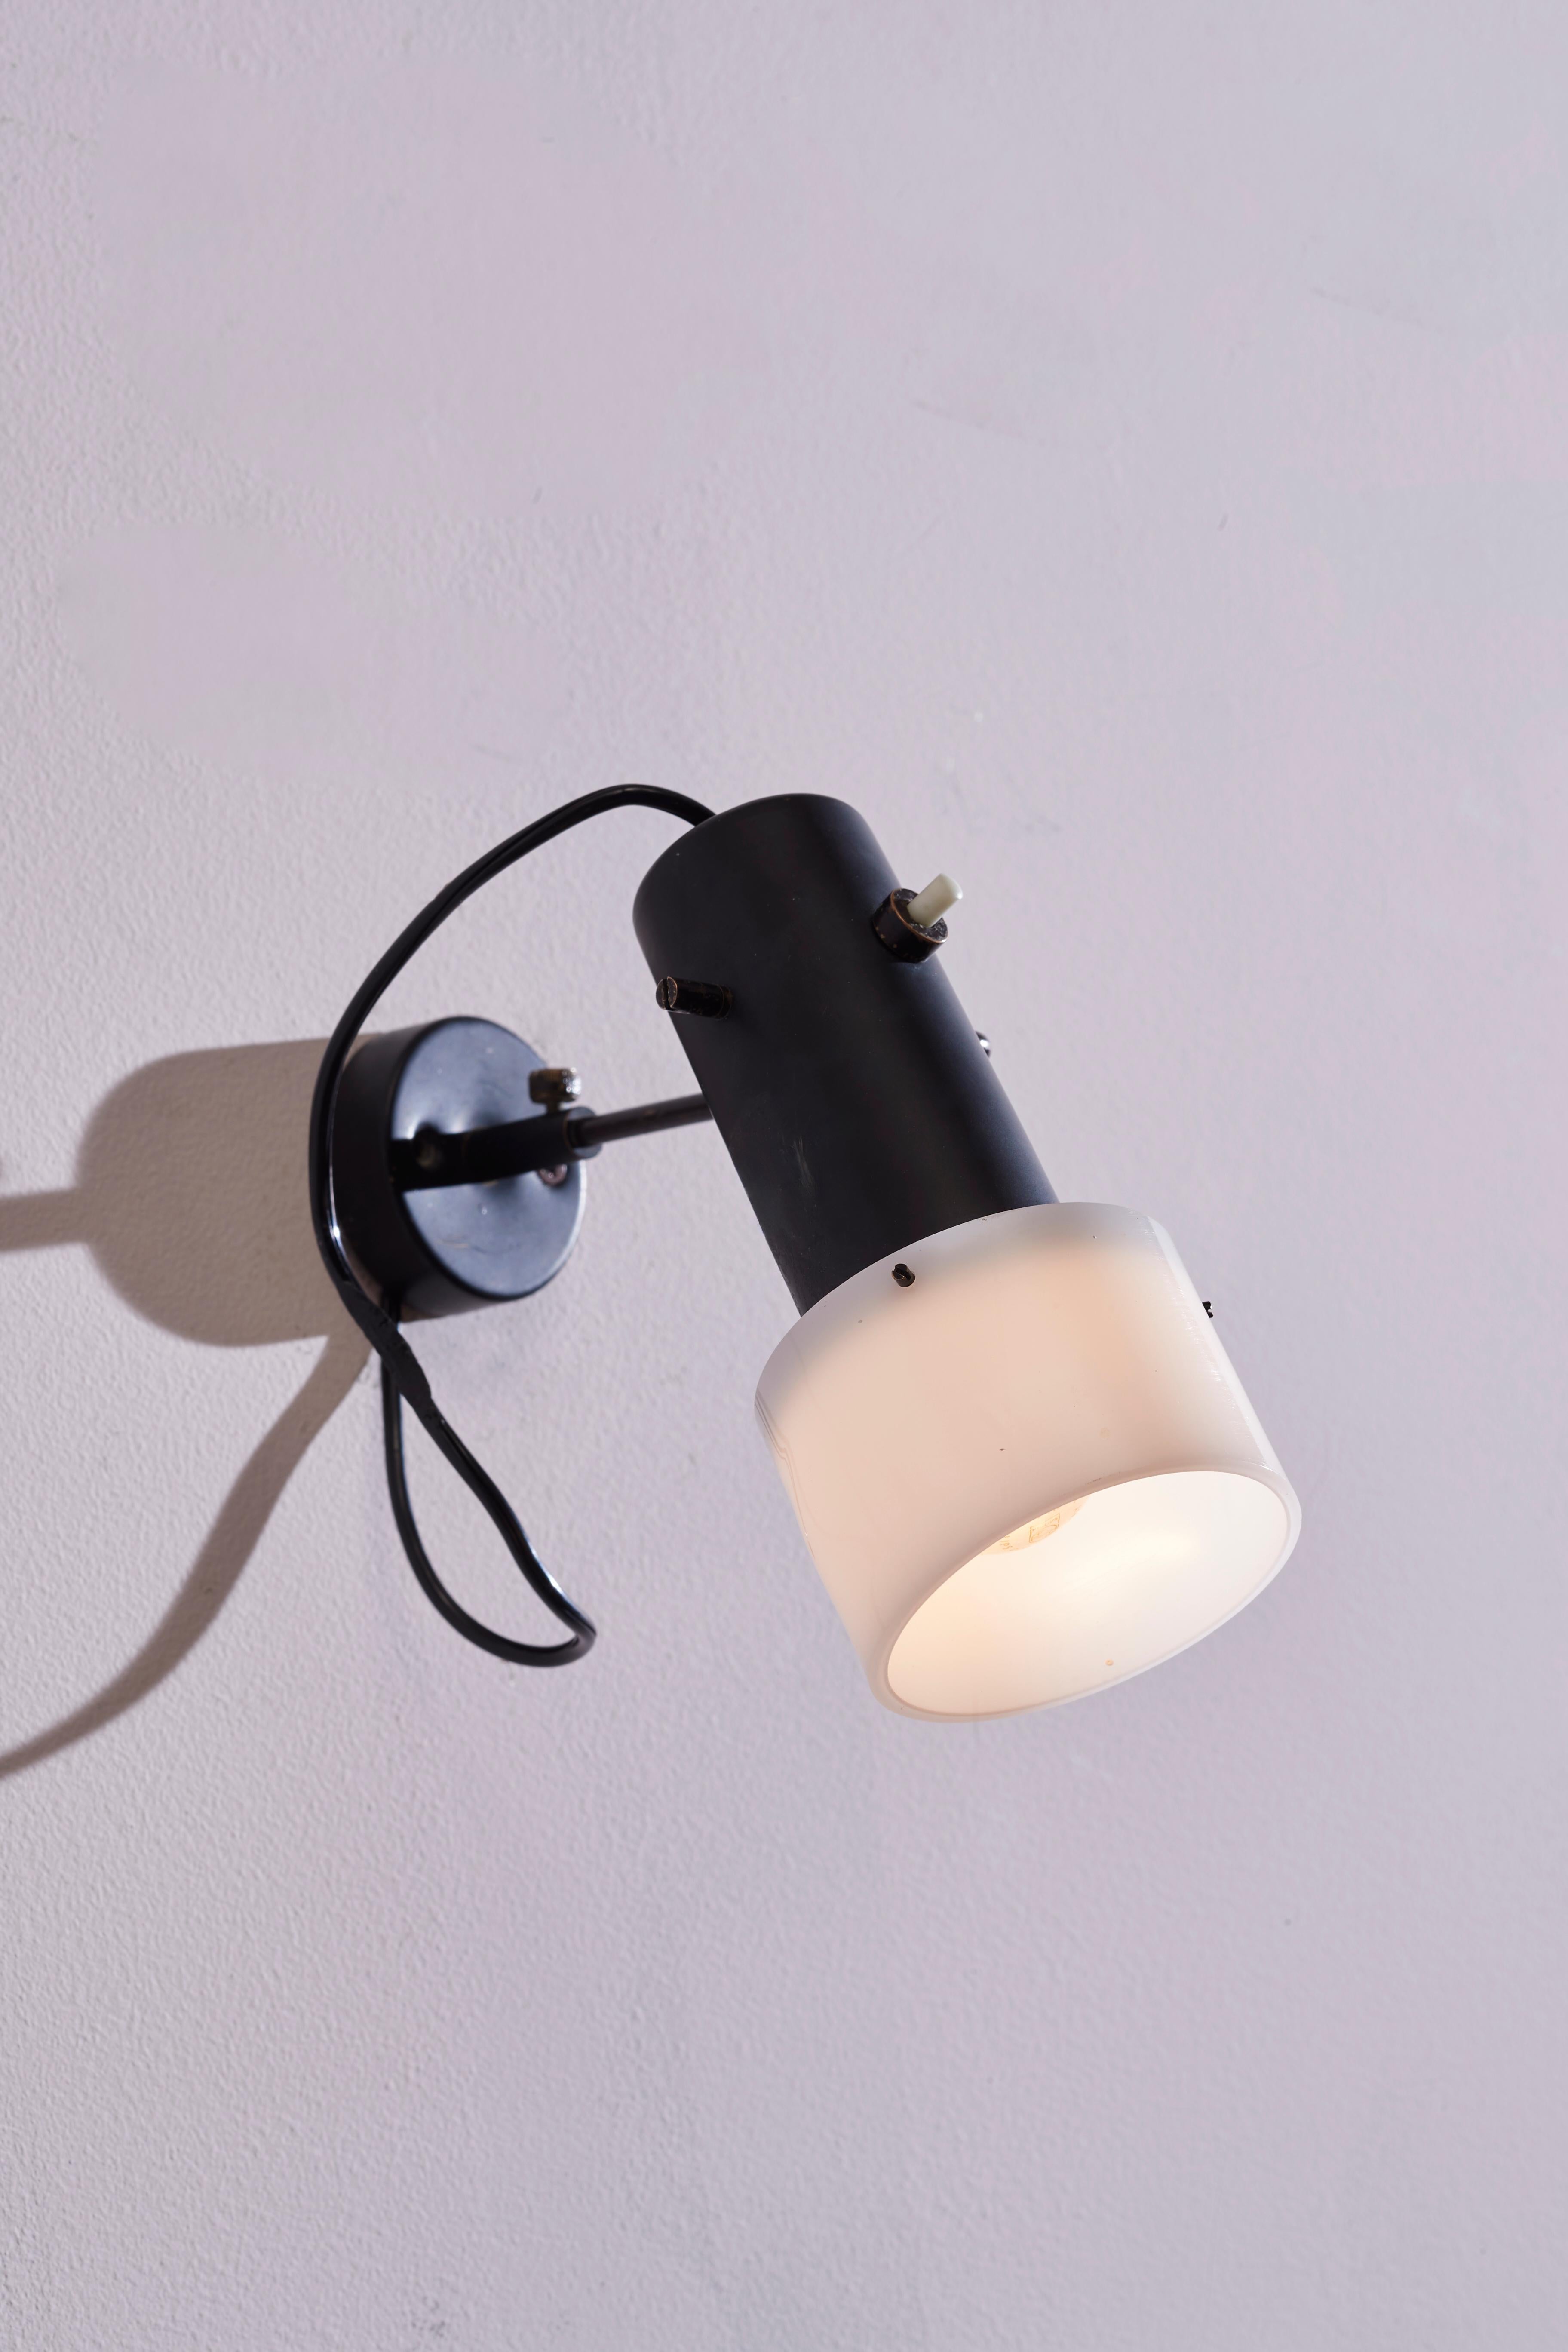 Eine seltene und faszinierende verstellbare Wandleuchte des Modells 3, entworfen von Gino Sarfatti und hergestellt von Arteluce in Italien in den 1950er Jahren. Diese Leuchte zeichnet sich durch einen verstellbaren Lampenschirm aus. Sie ist aus